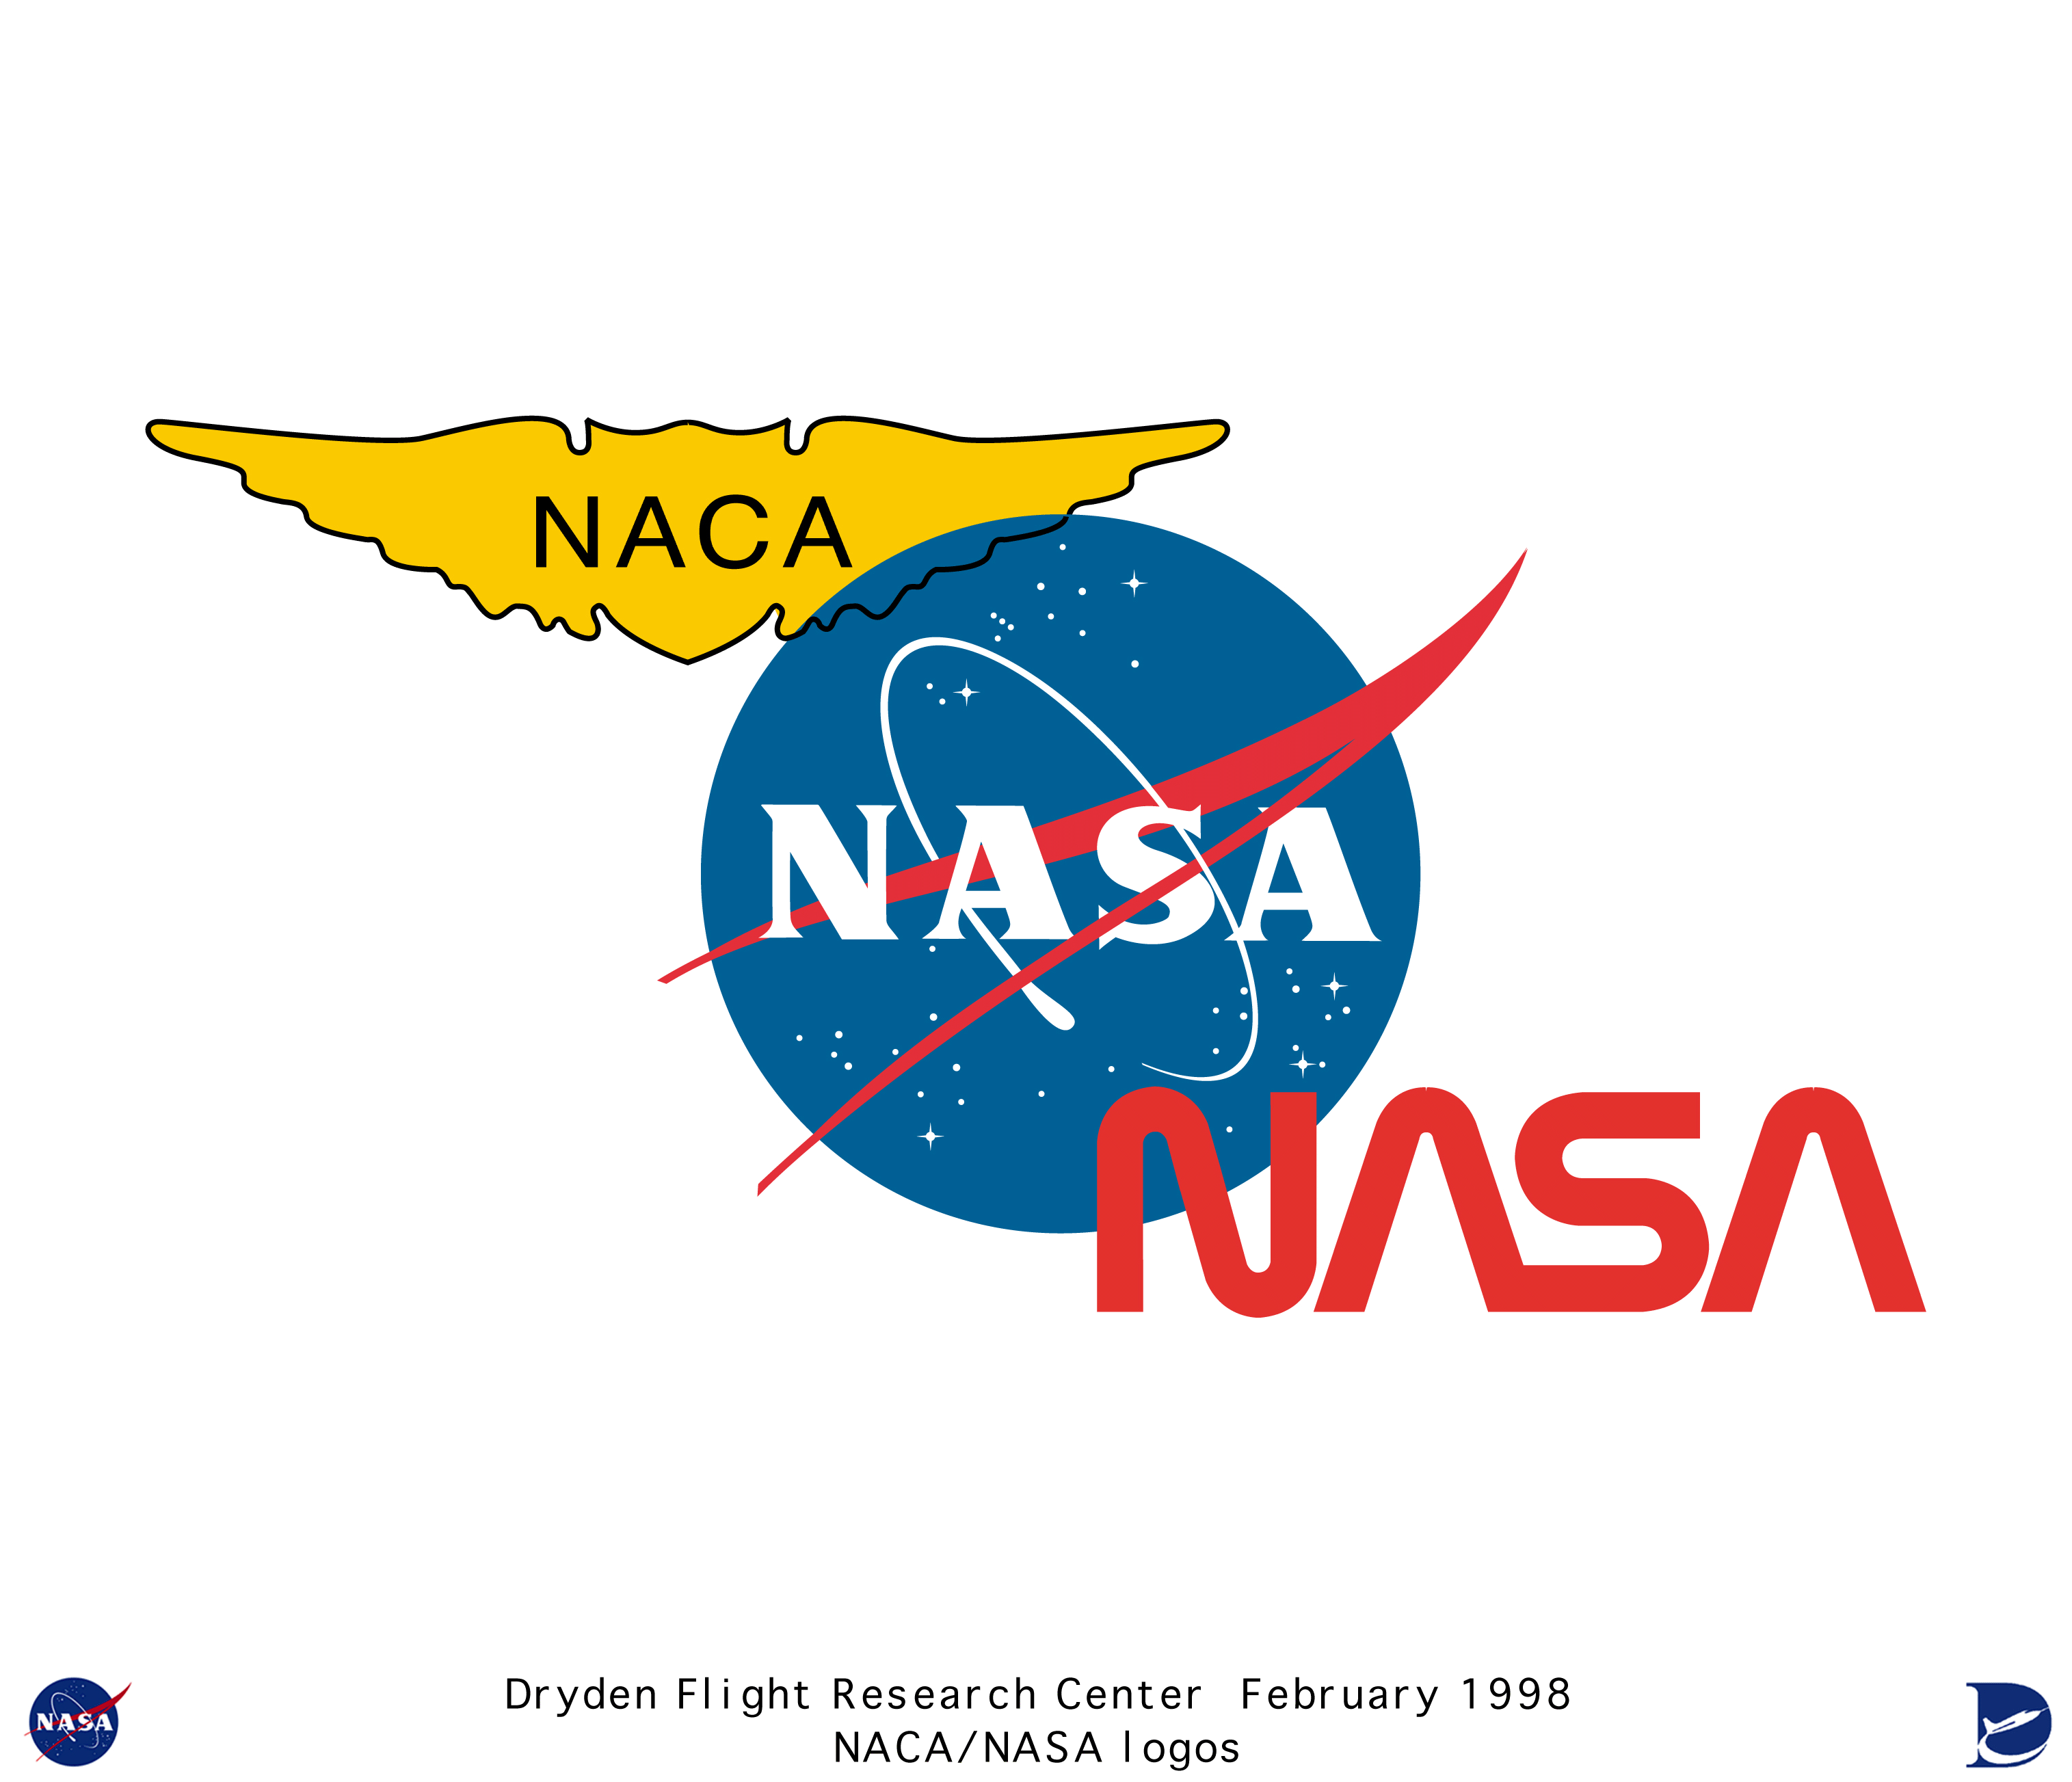 NACA NASA Logo - Logos color_tri-logo: Color tri-logo (NACA, 2 NASA insignia)